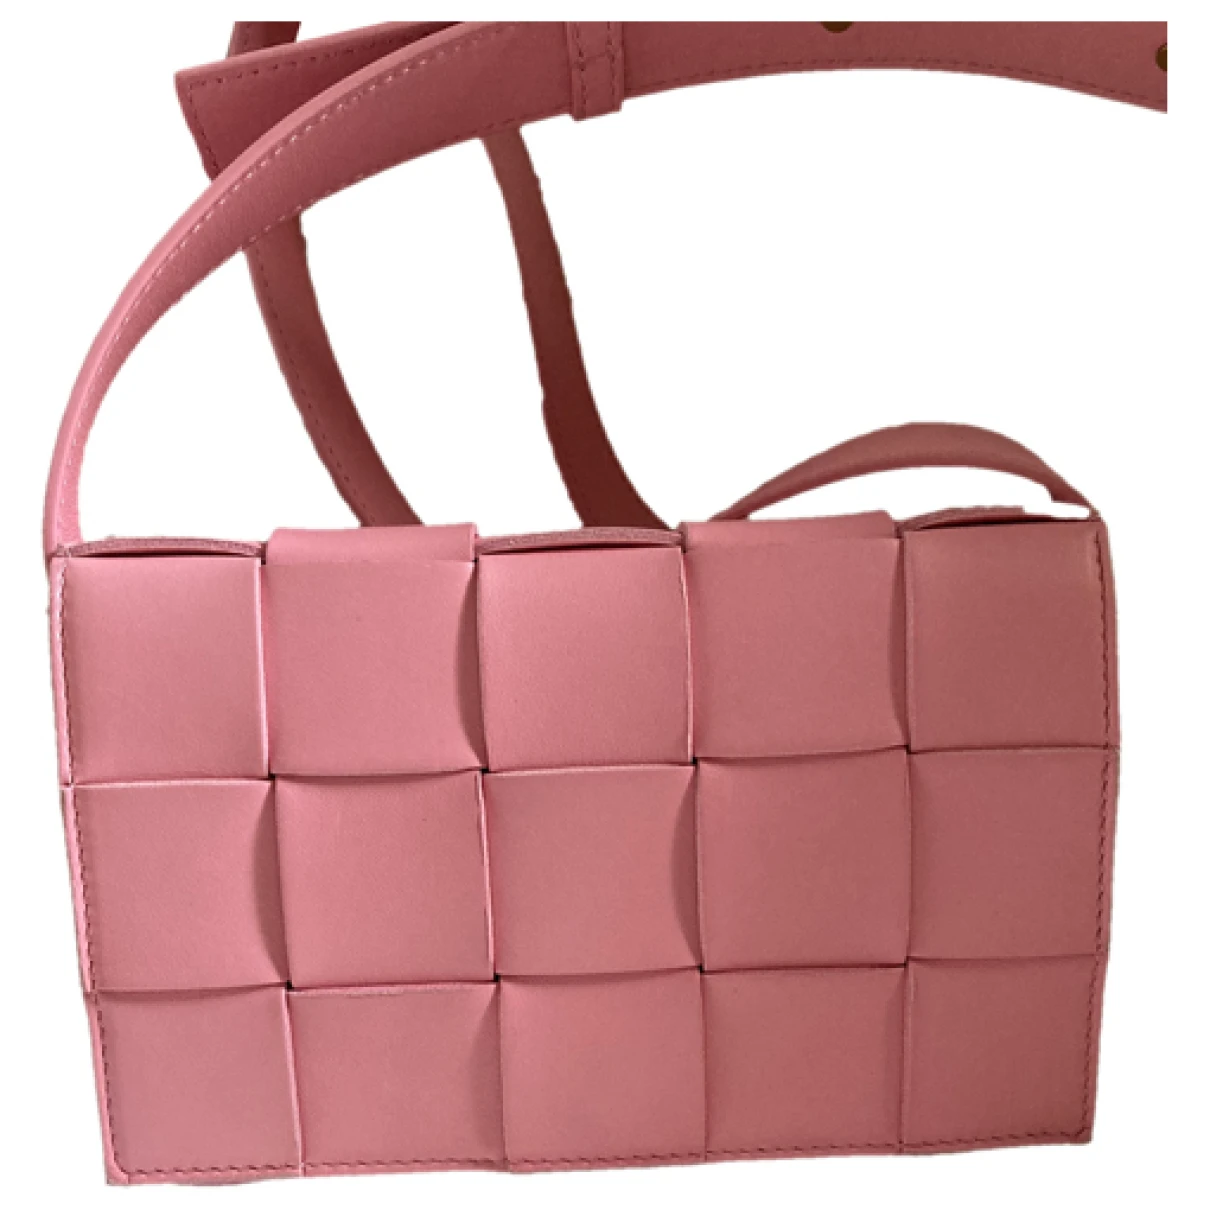 Pre-owned Bottega Veneta Cassette Leather Crossbody Bag In Pink